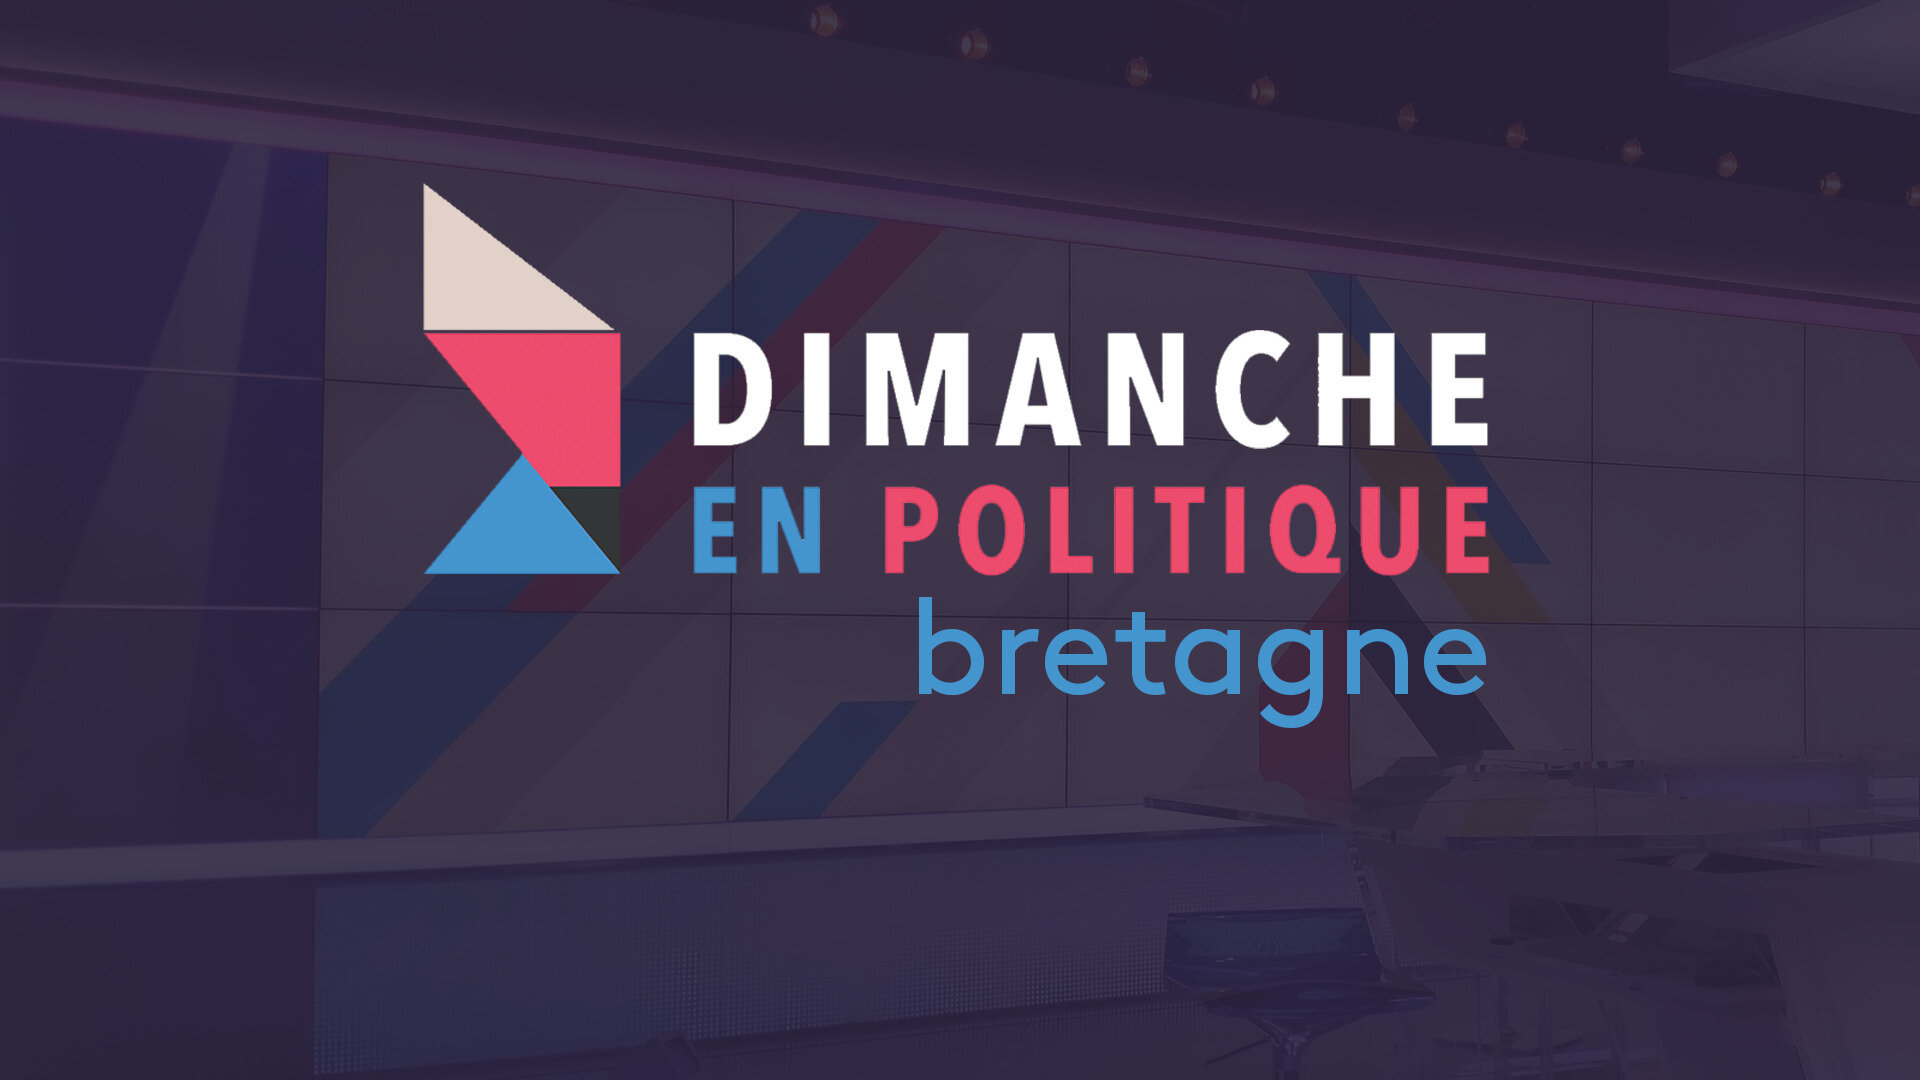 Dimanche en politique - Bretagne